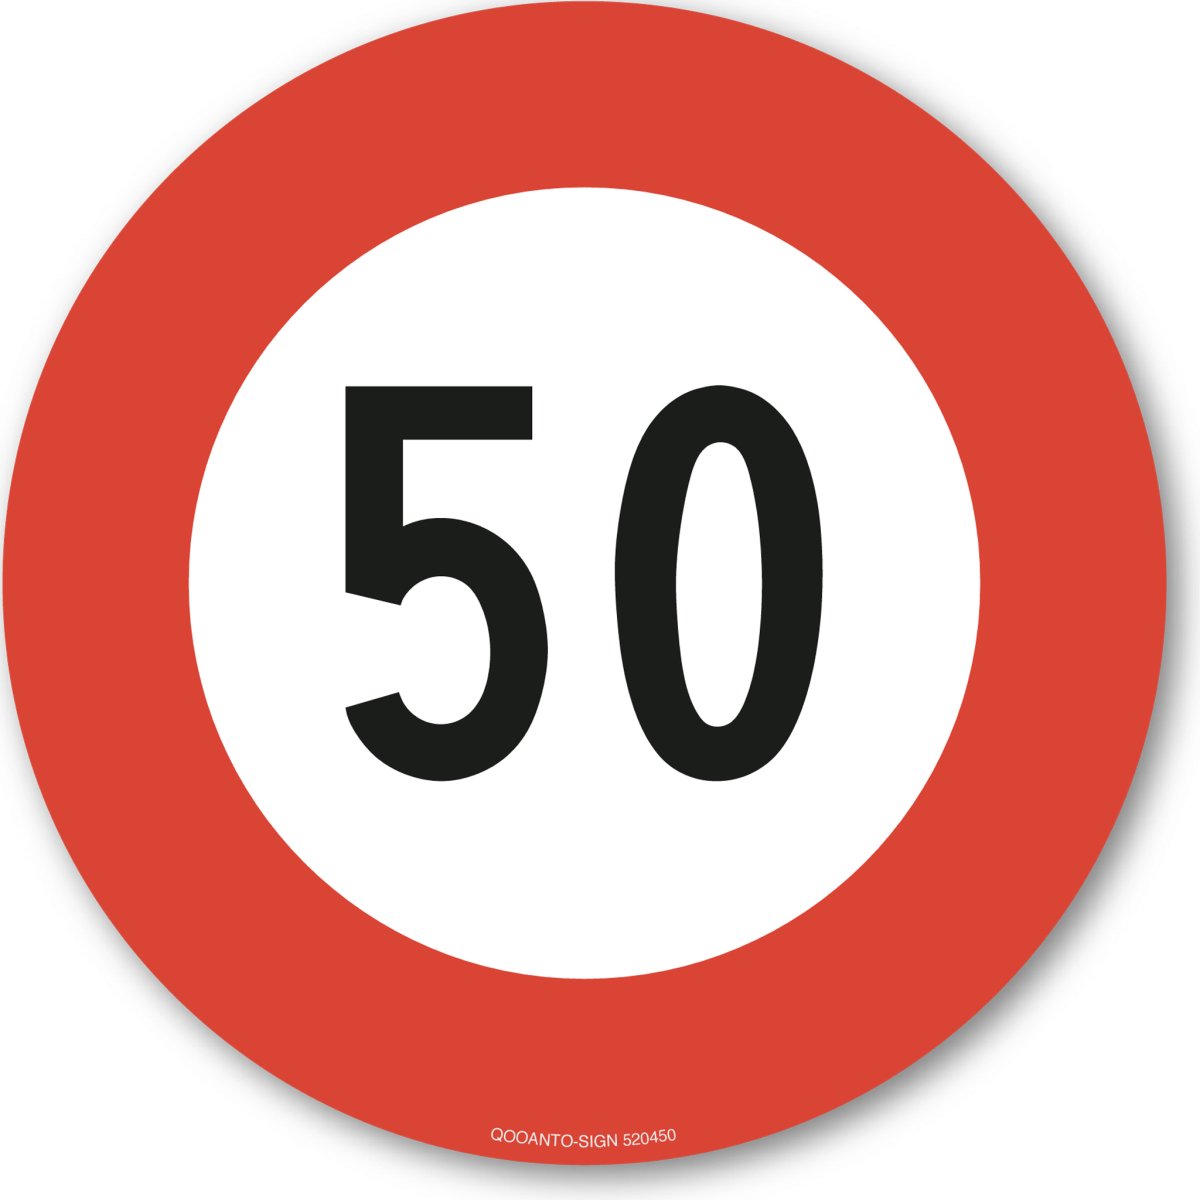 50 Höchstgeschwindigkeit Verkehrsschild oder Aufkleber aus Alu-Verbund oder Selbstklebefolie mit UV-Schutz - QOOANTO-SIGN